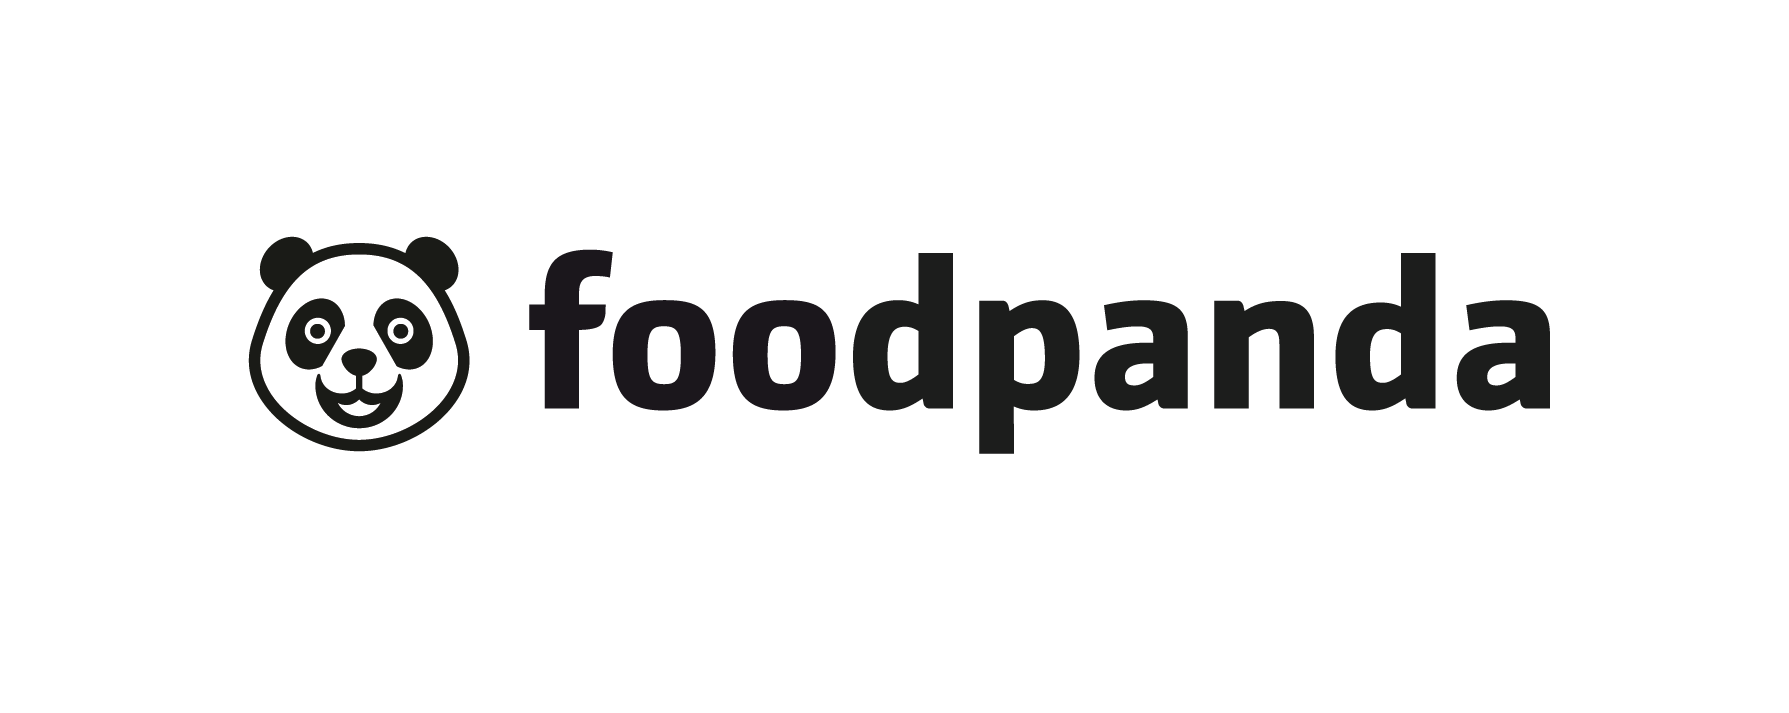 foodpanda Logo - Foodpanda Logo